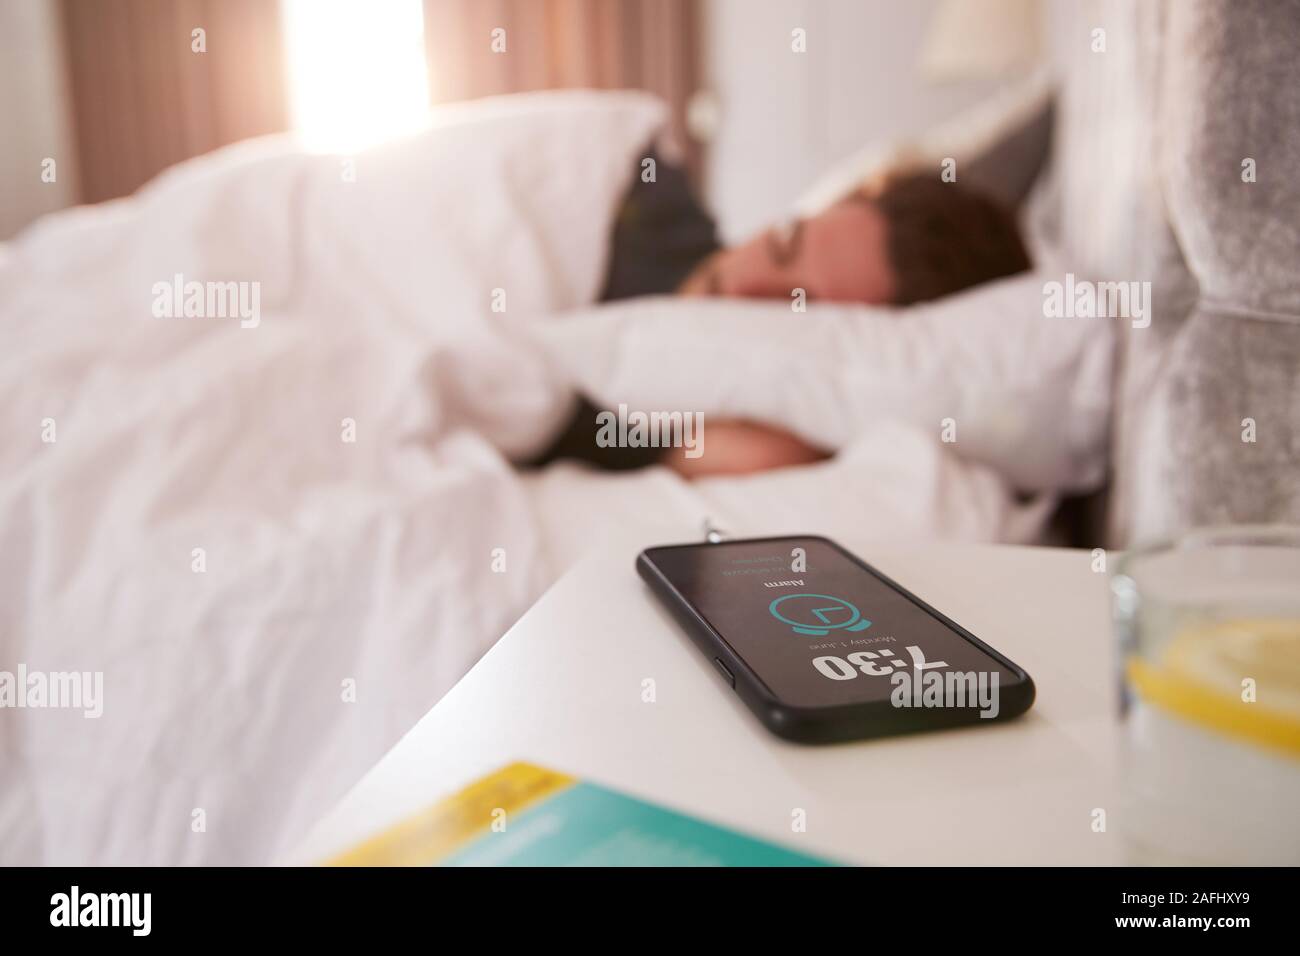 Uomo dorme nel letto con telefono cellulare sul comodino Foto Stock